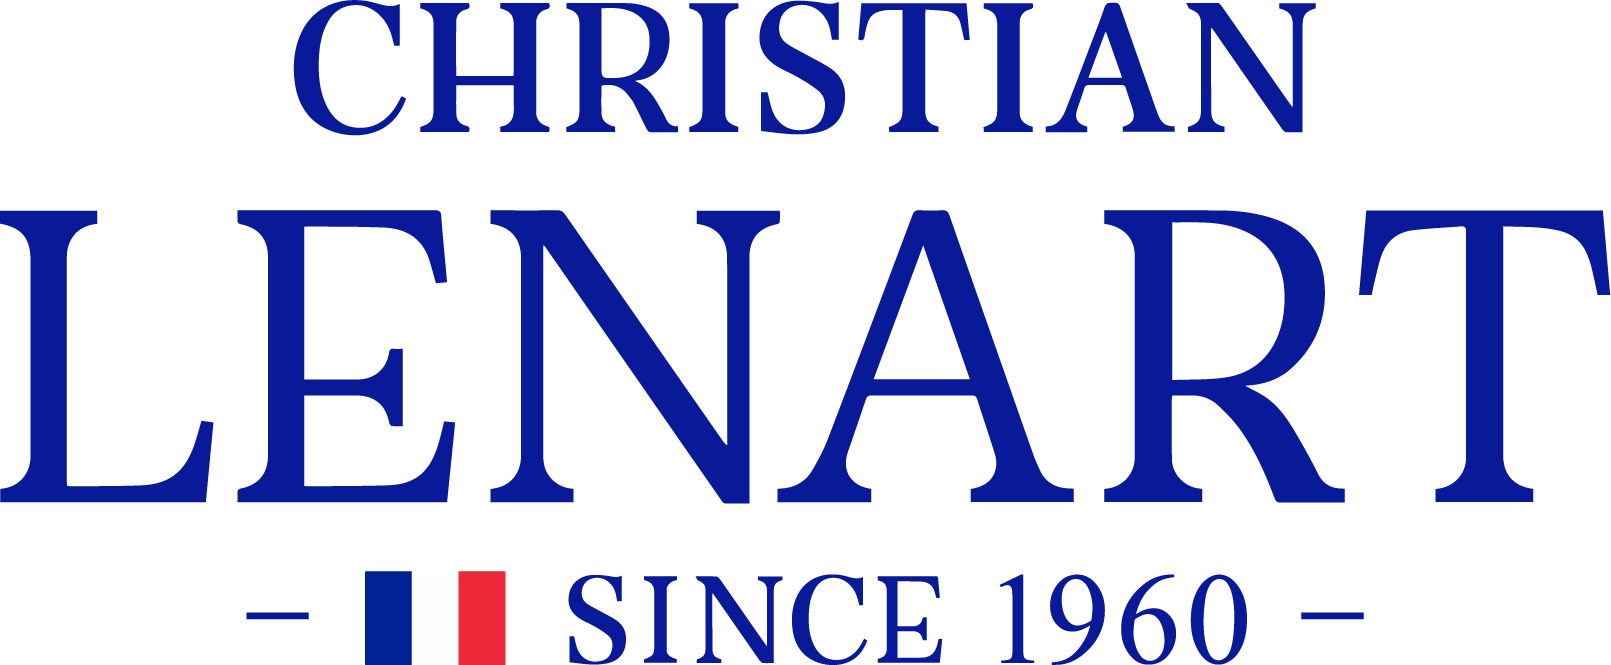 Christian Lénart - Since 1960